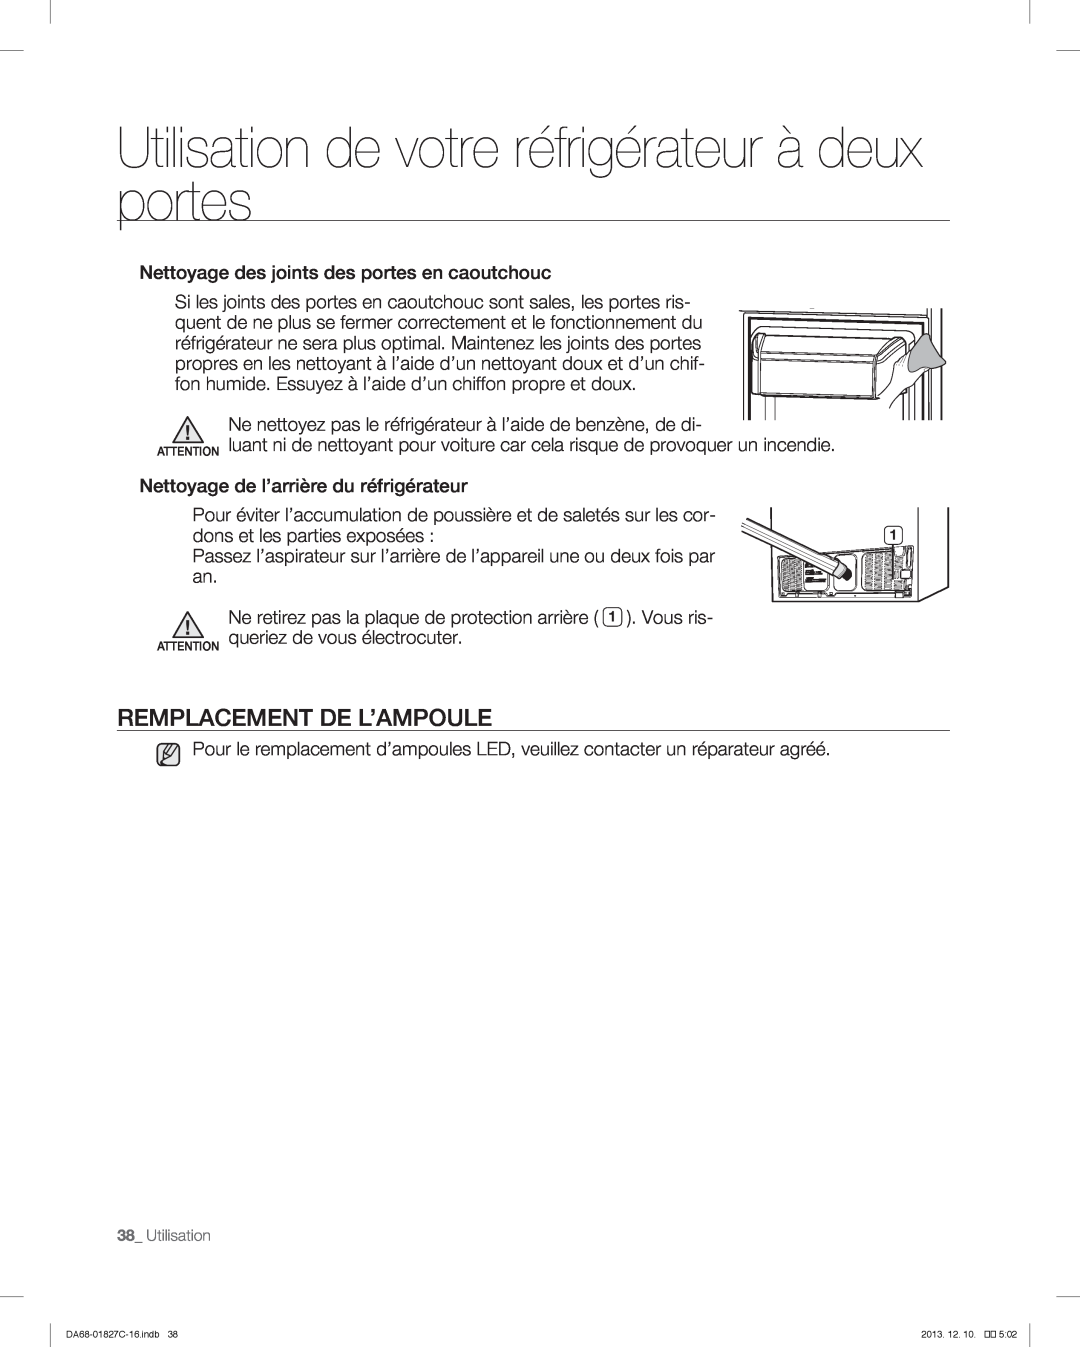 Samsung RFG237AARS user manual Remplacement De L’Ampoule, Utilisation de votre réfrigérateur à deux portes 